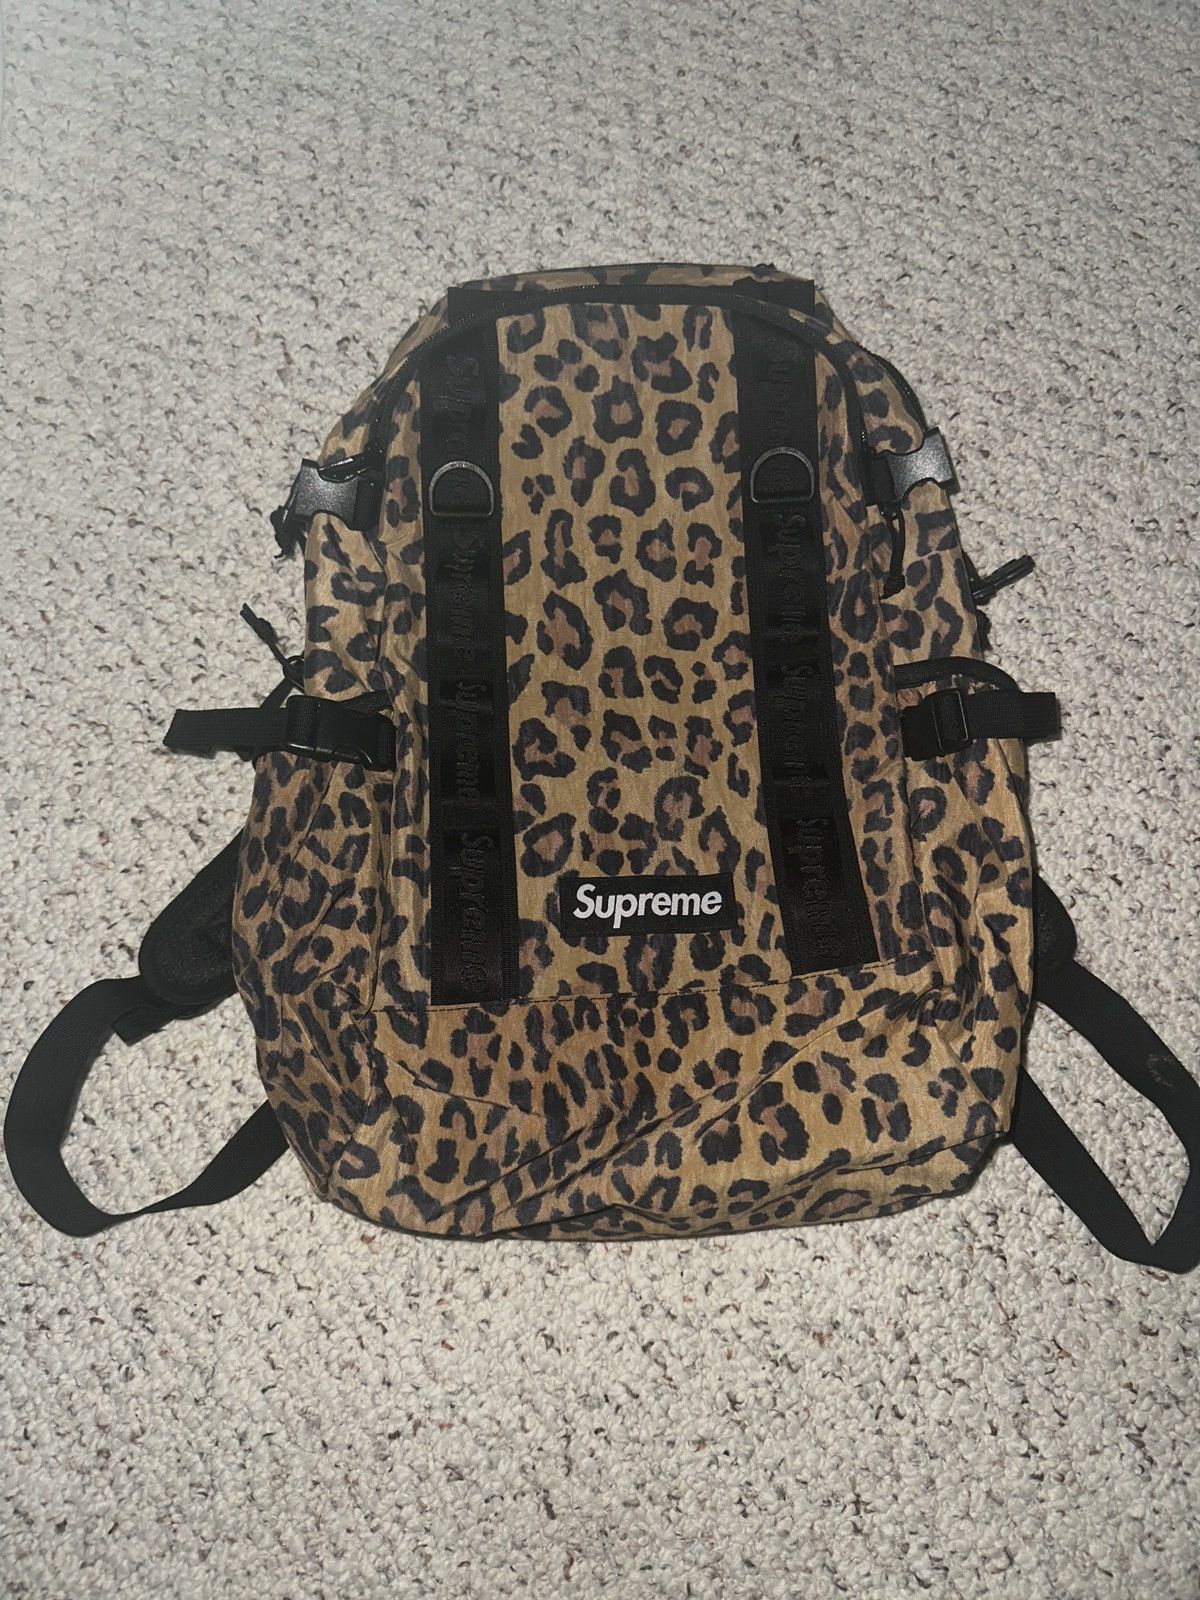 Leopard Supreme Bag | Grailed